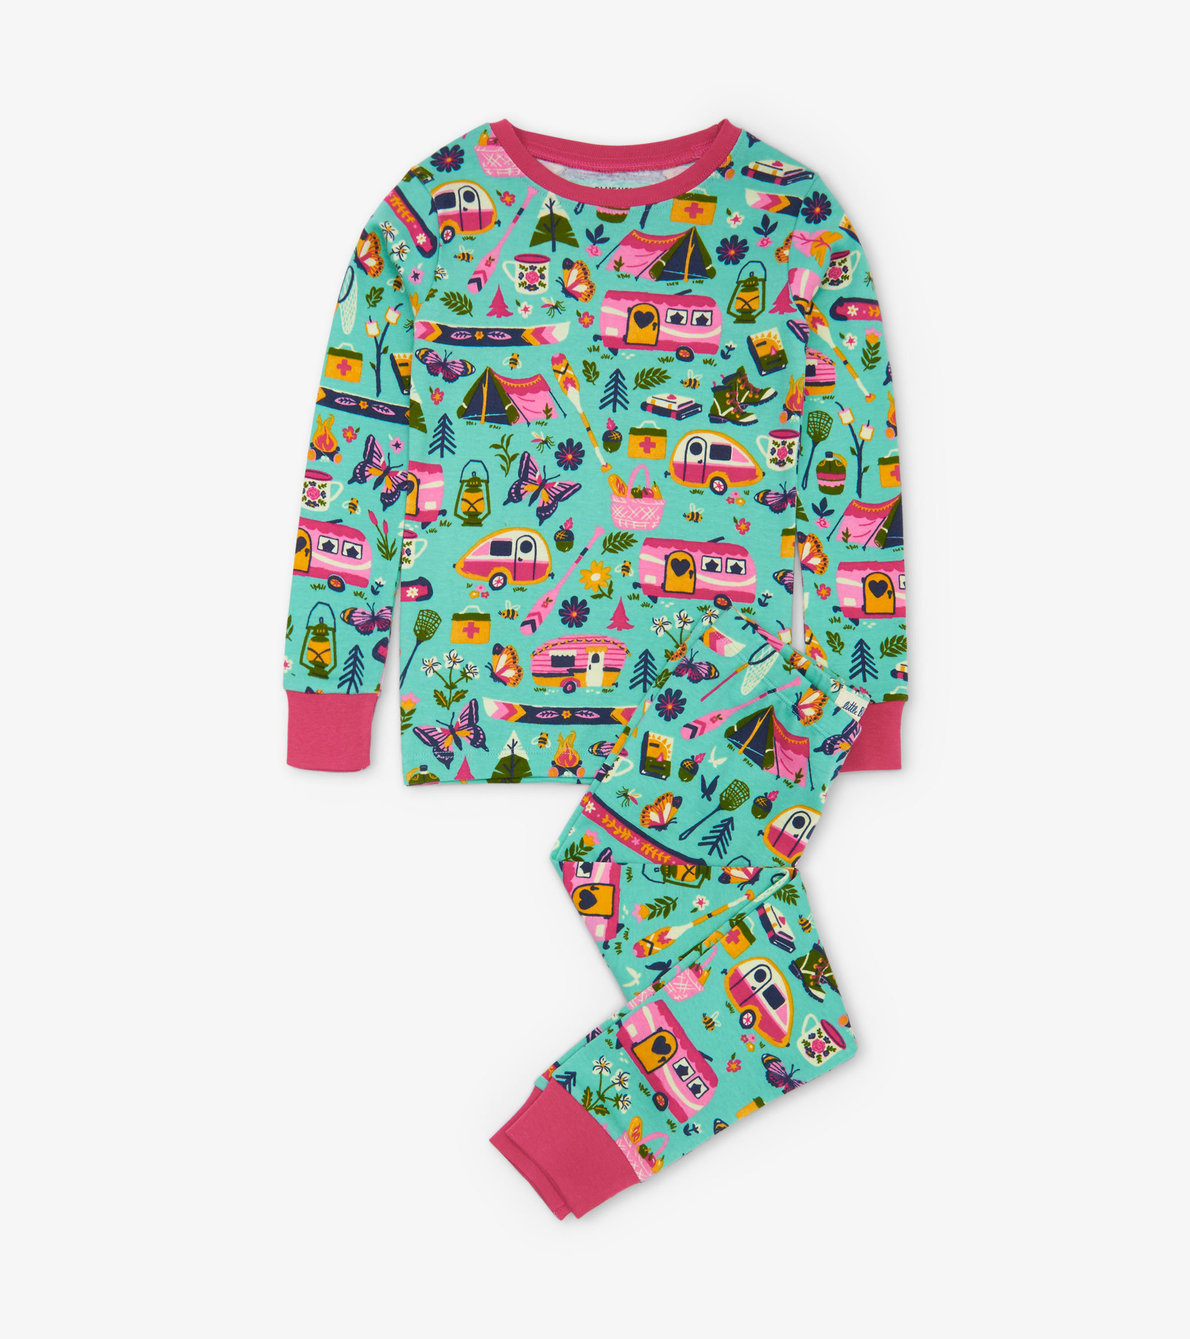 View larger image of Glamping Kids Pajama Set